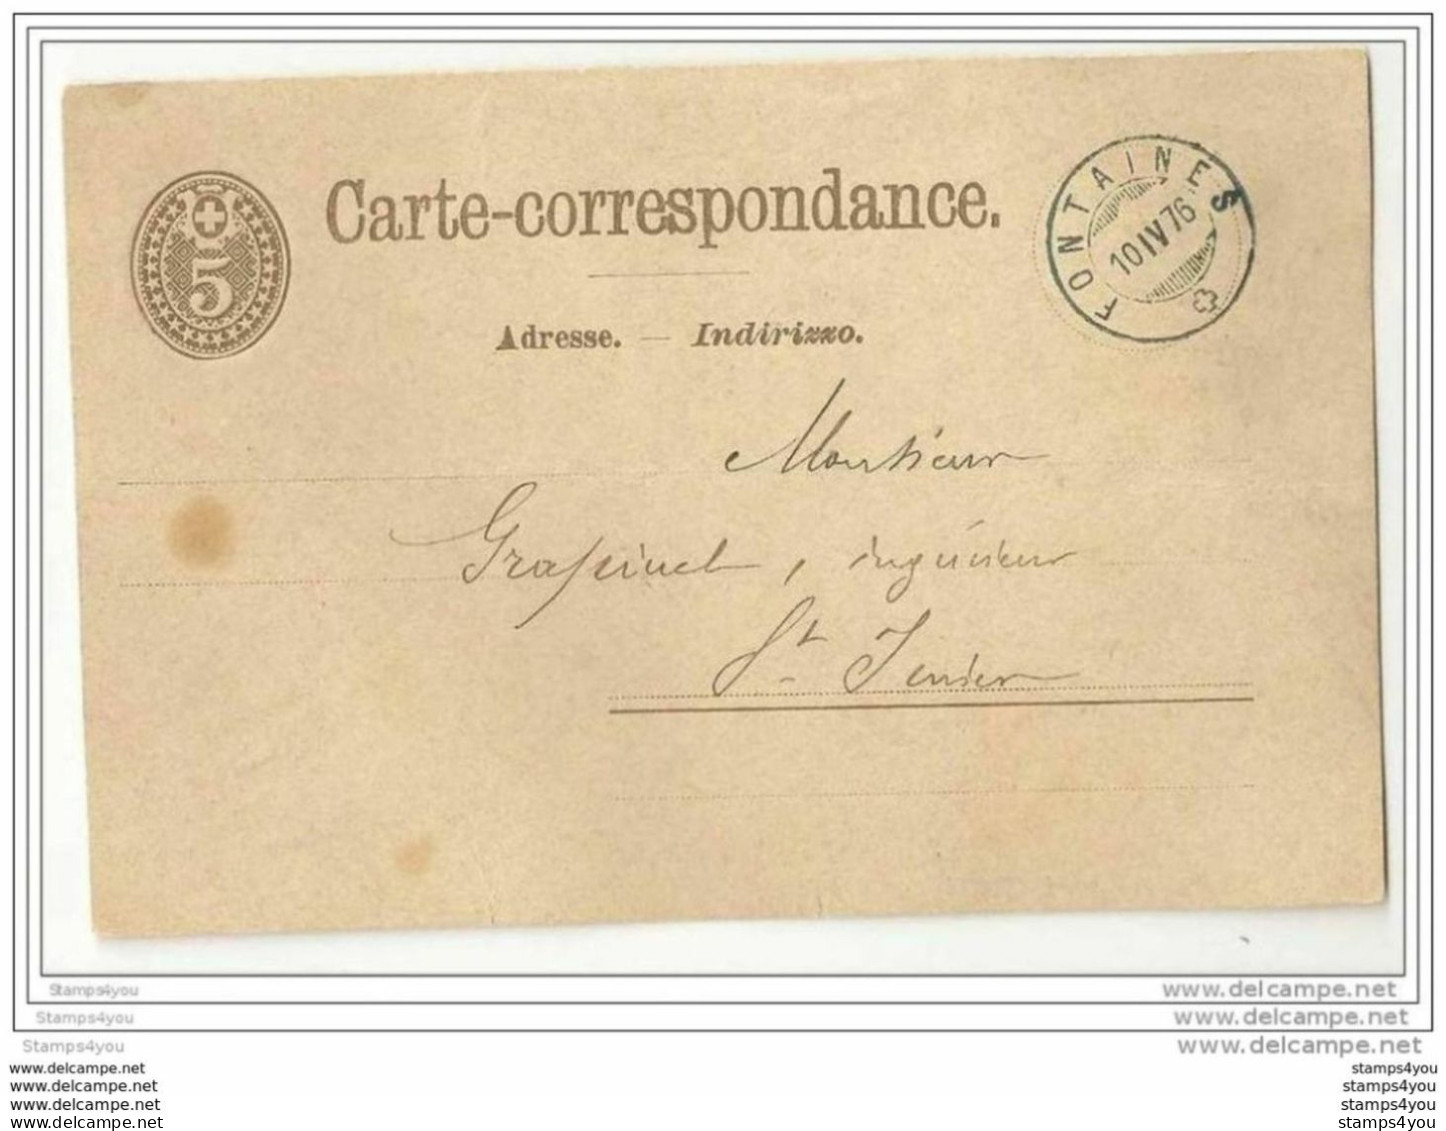 45 - 45 - Entier Postal Suisse - Superbe Cachet à Date De Fontaines 1876 - Au Dos Cachet St Imier - Entiers Postaux